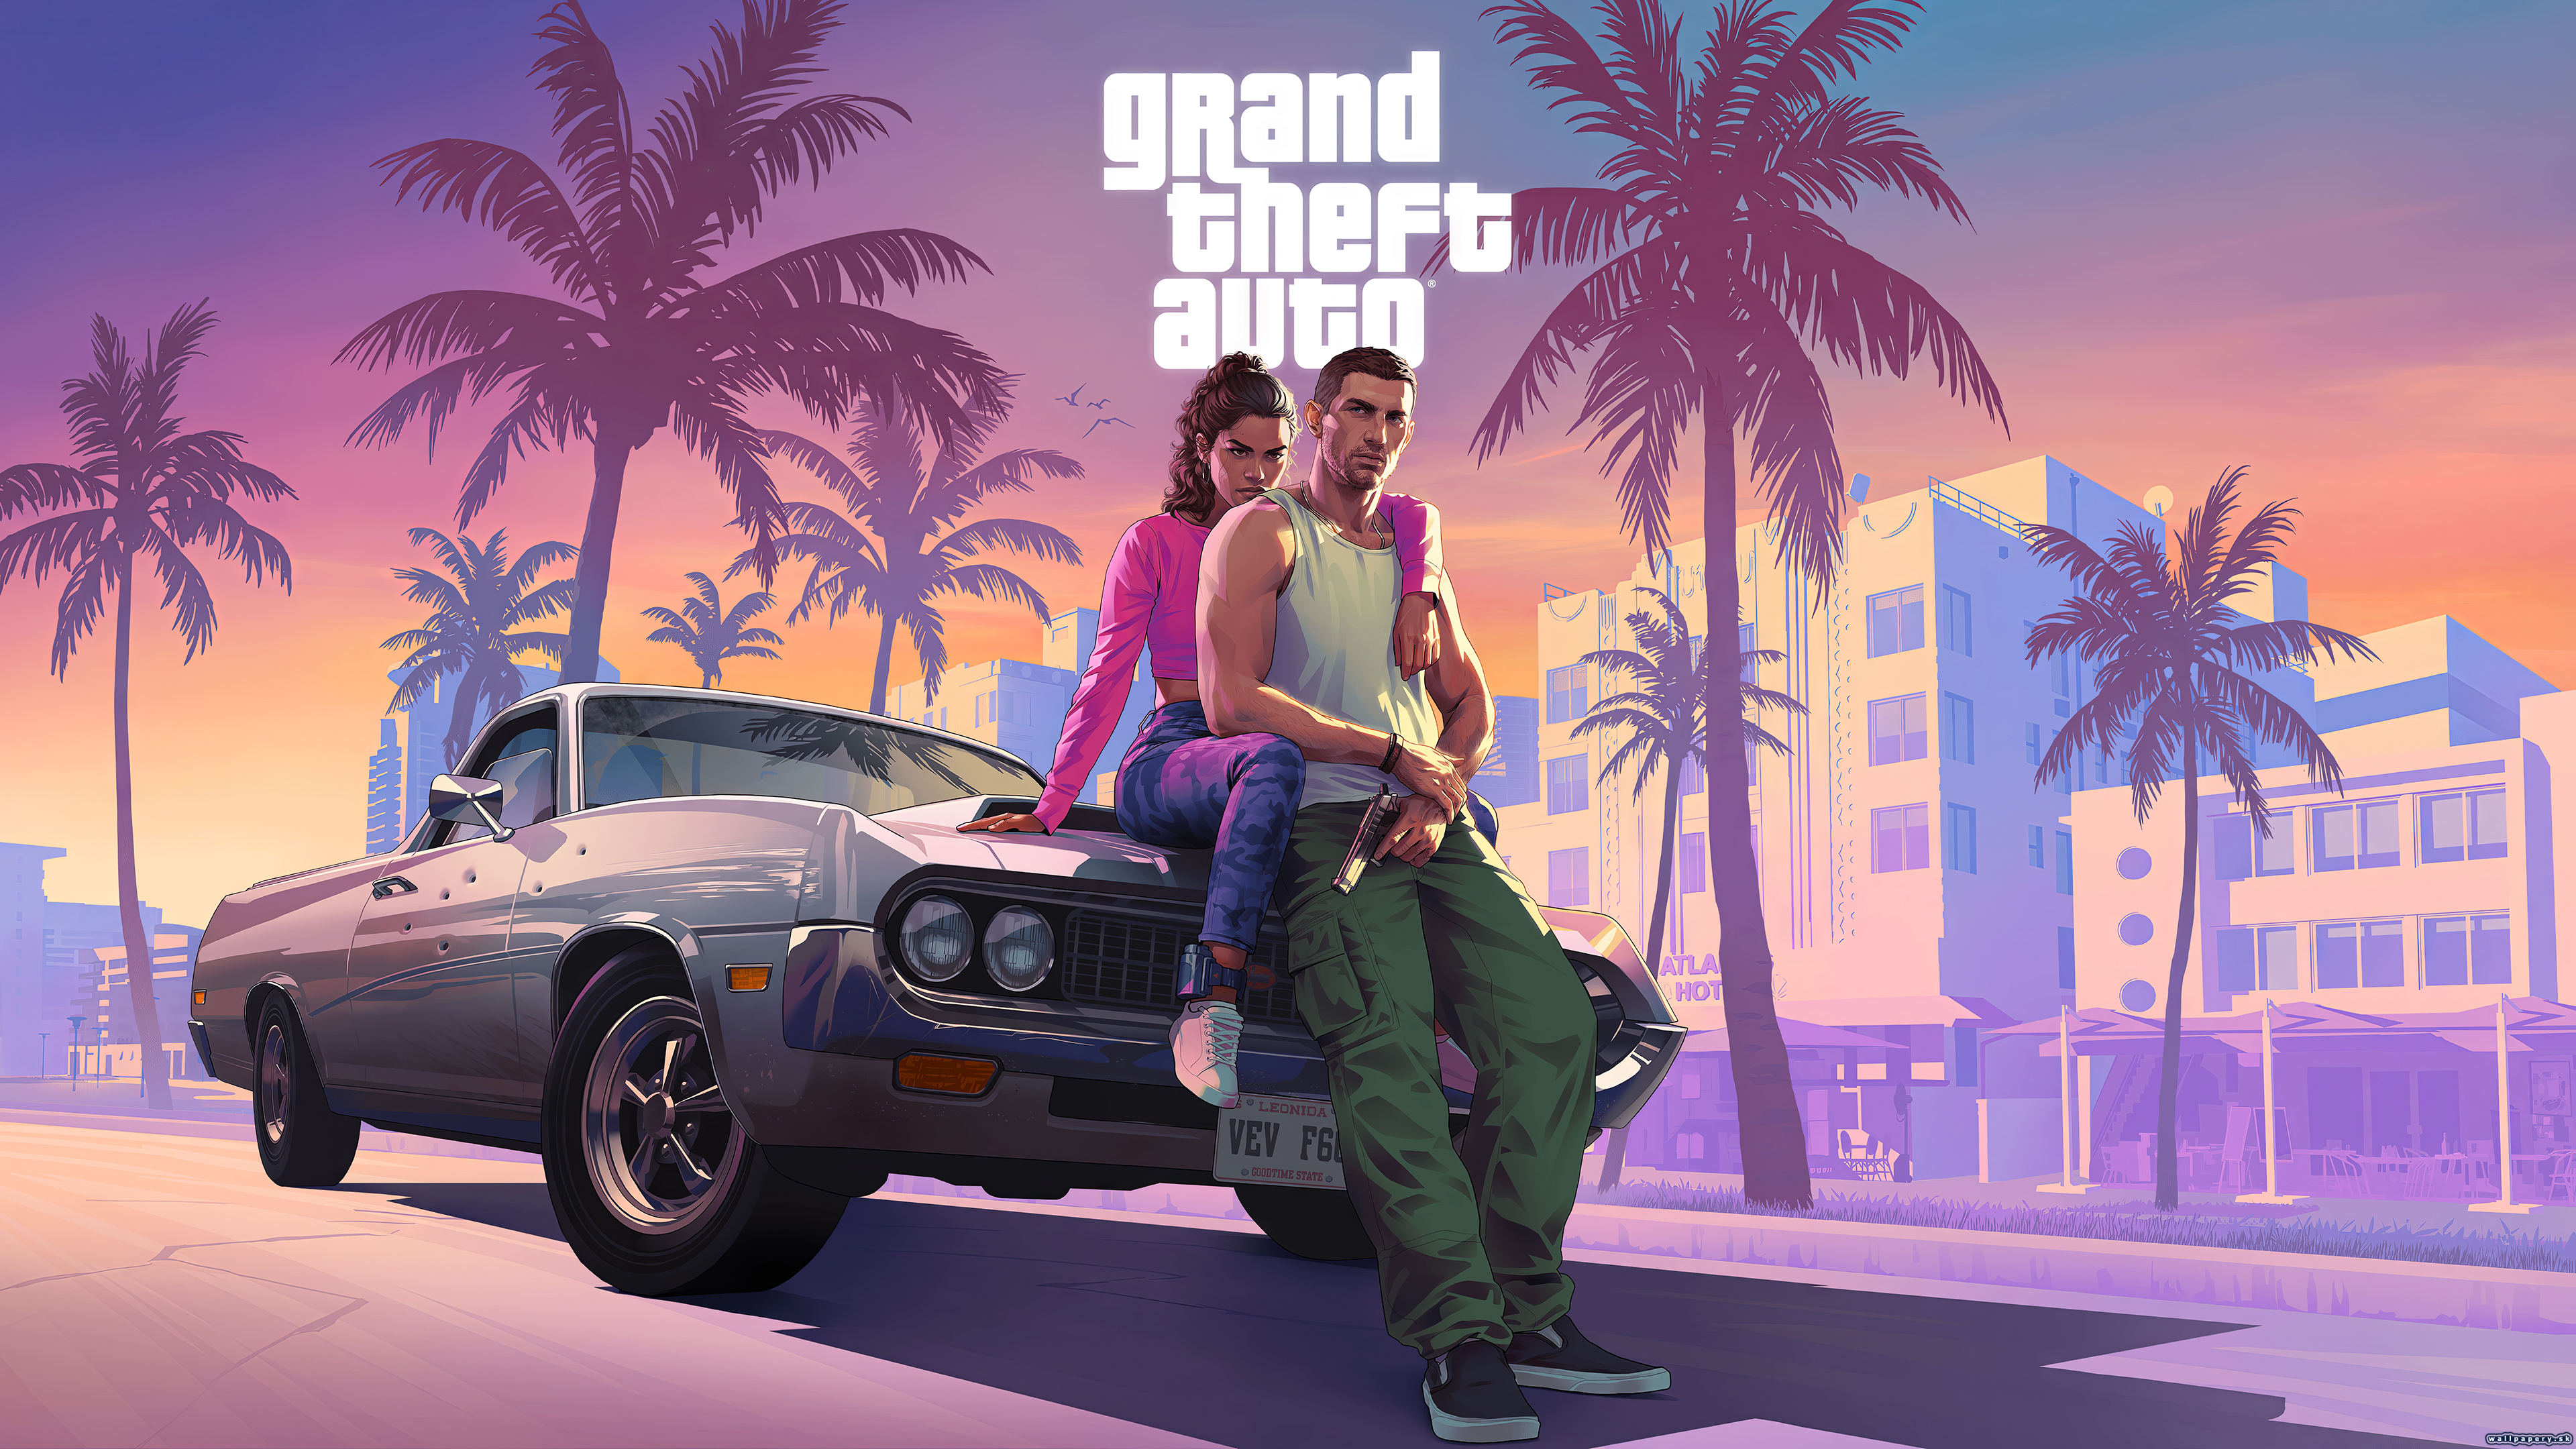 Grand Theft Auto VI - wallpaper 1